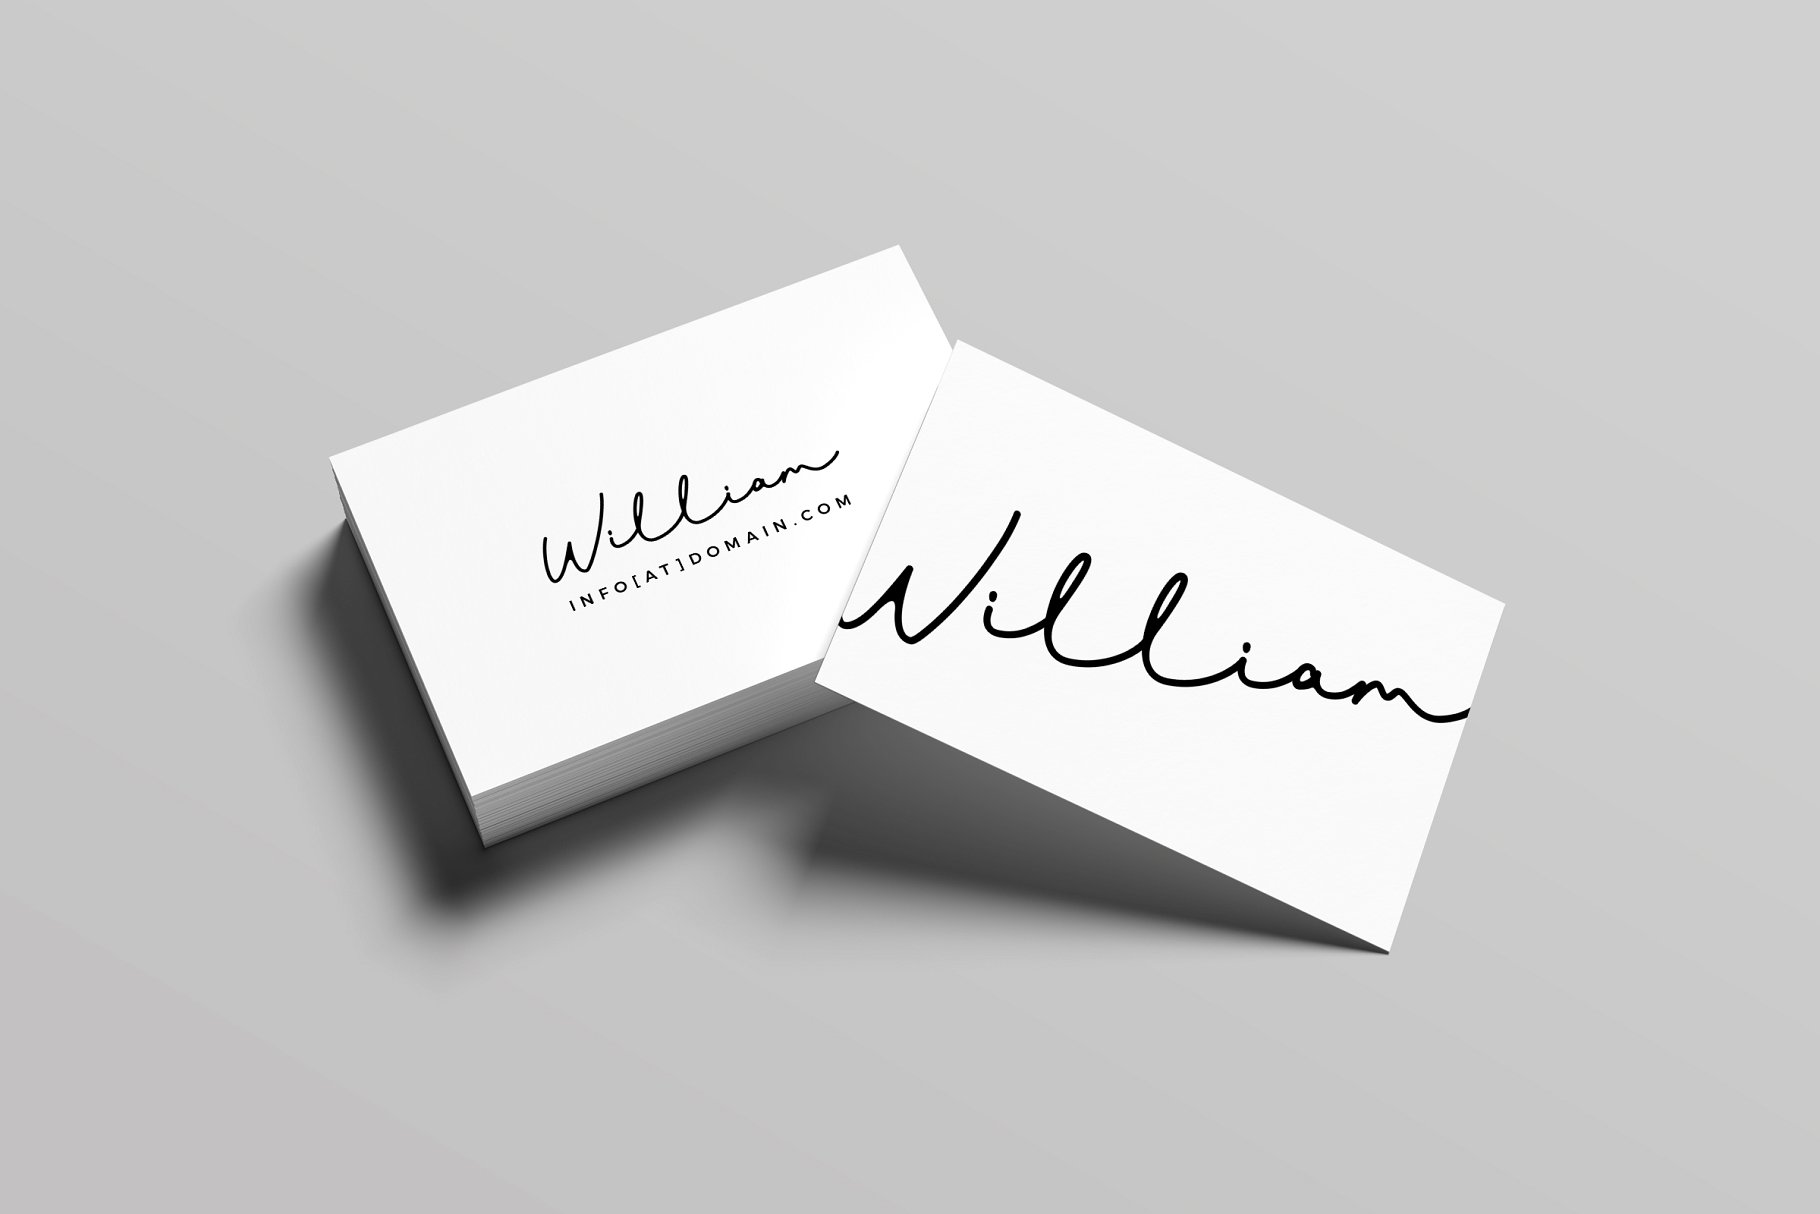 极简创意艺术名片设计模板 William Business Card Template插图(1)